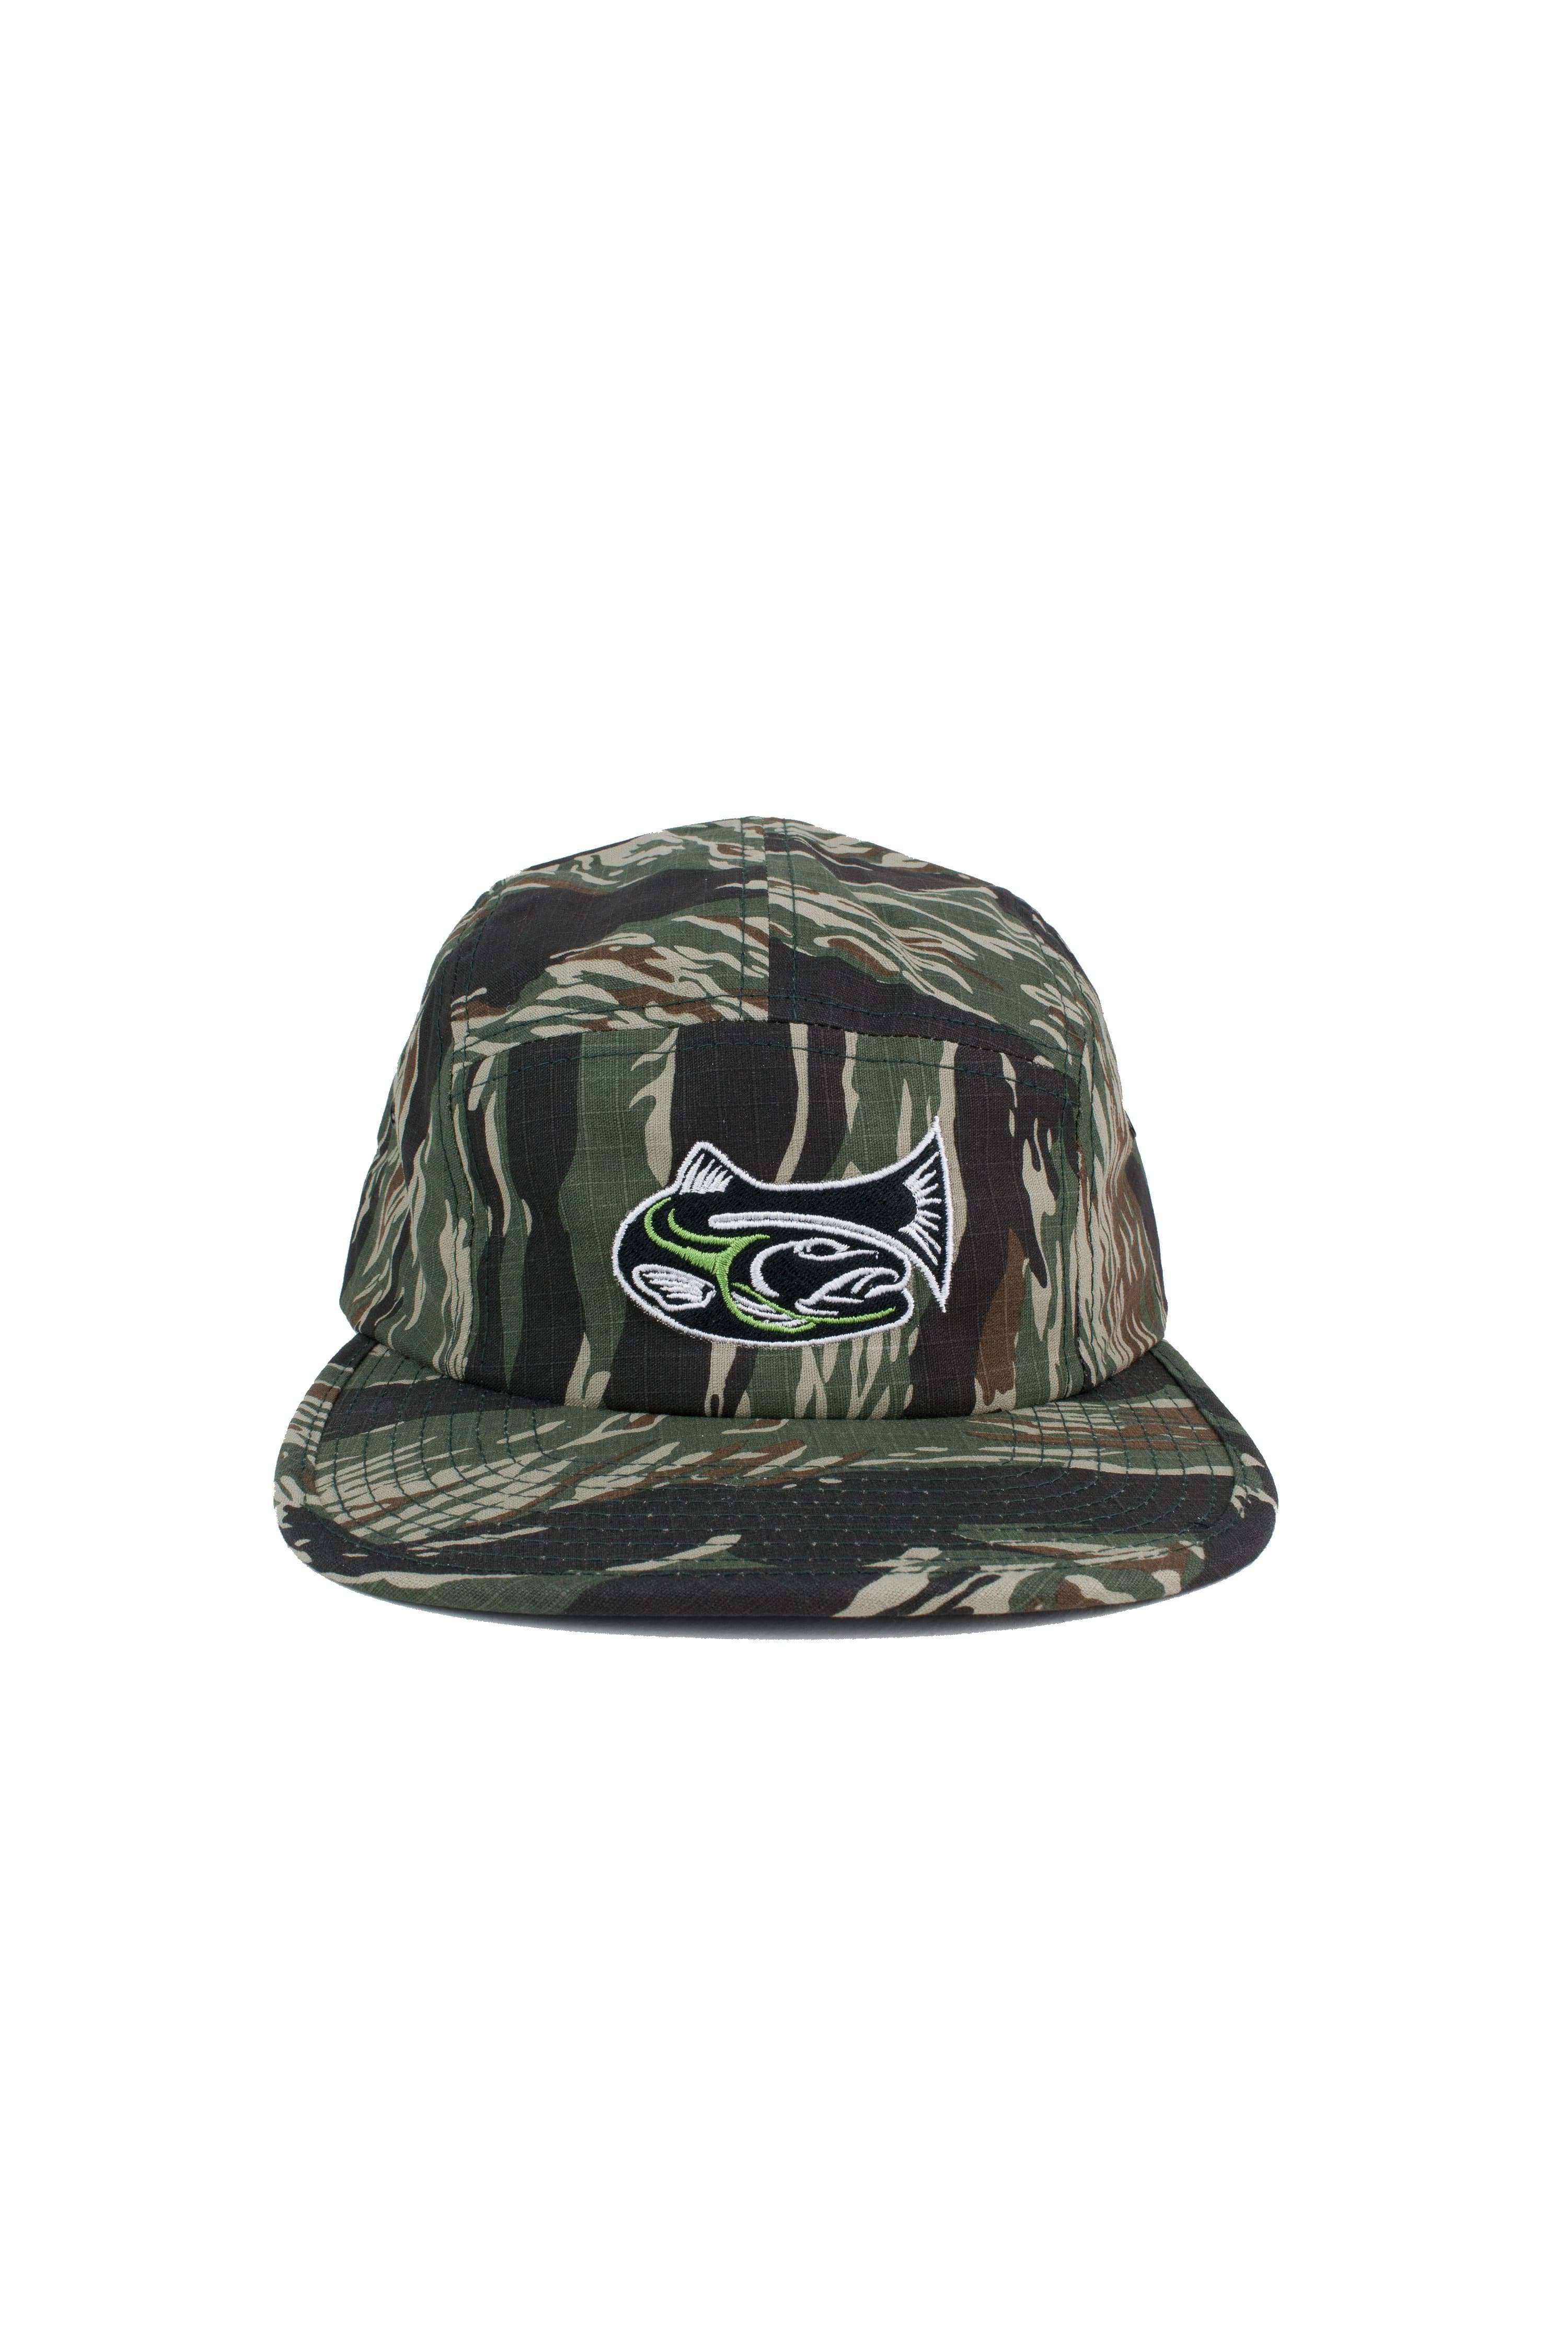 Drifthook Camper Cap—Camo with Green Logo - Drifthook